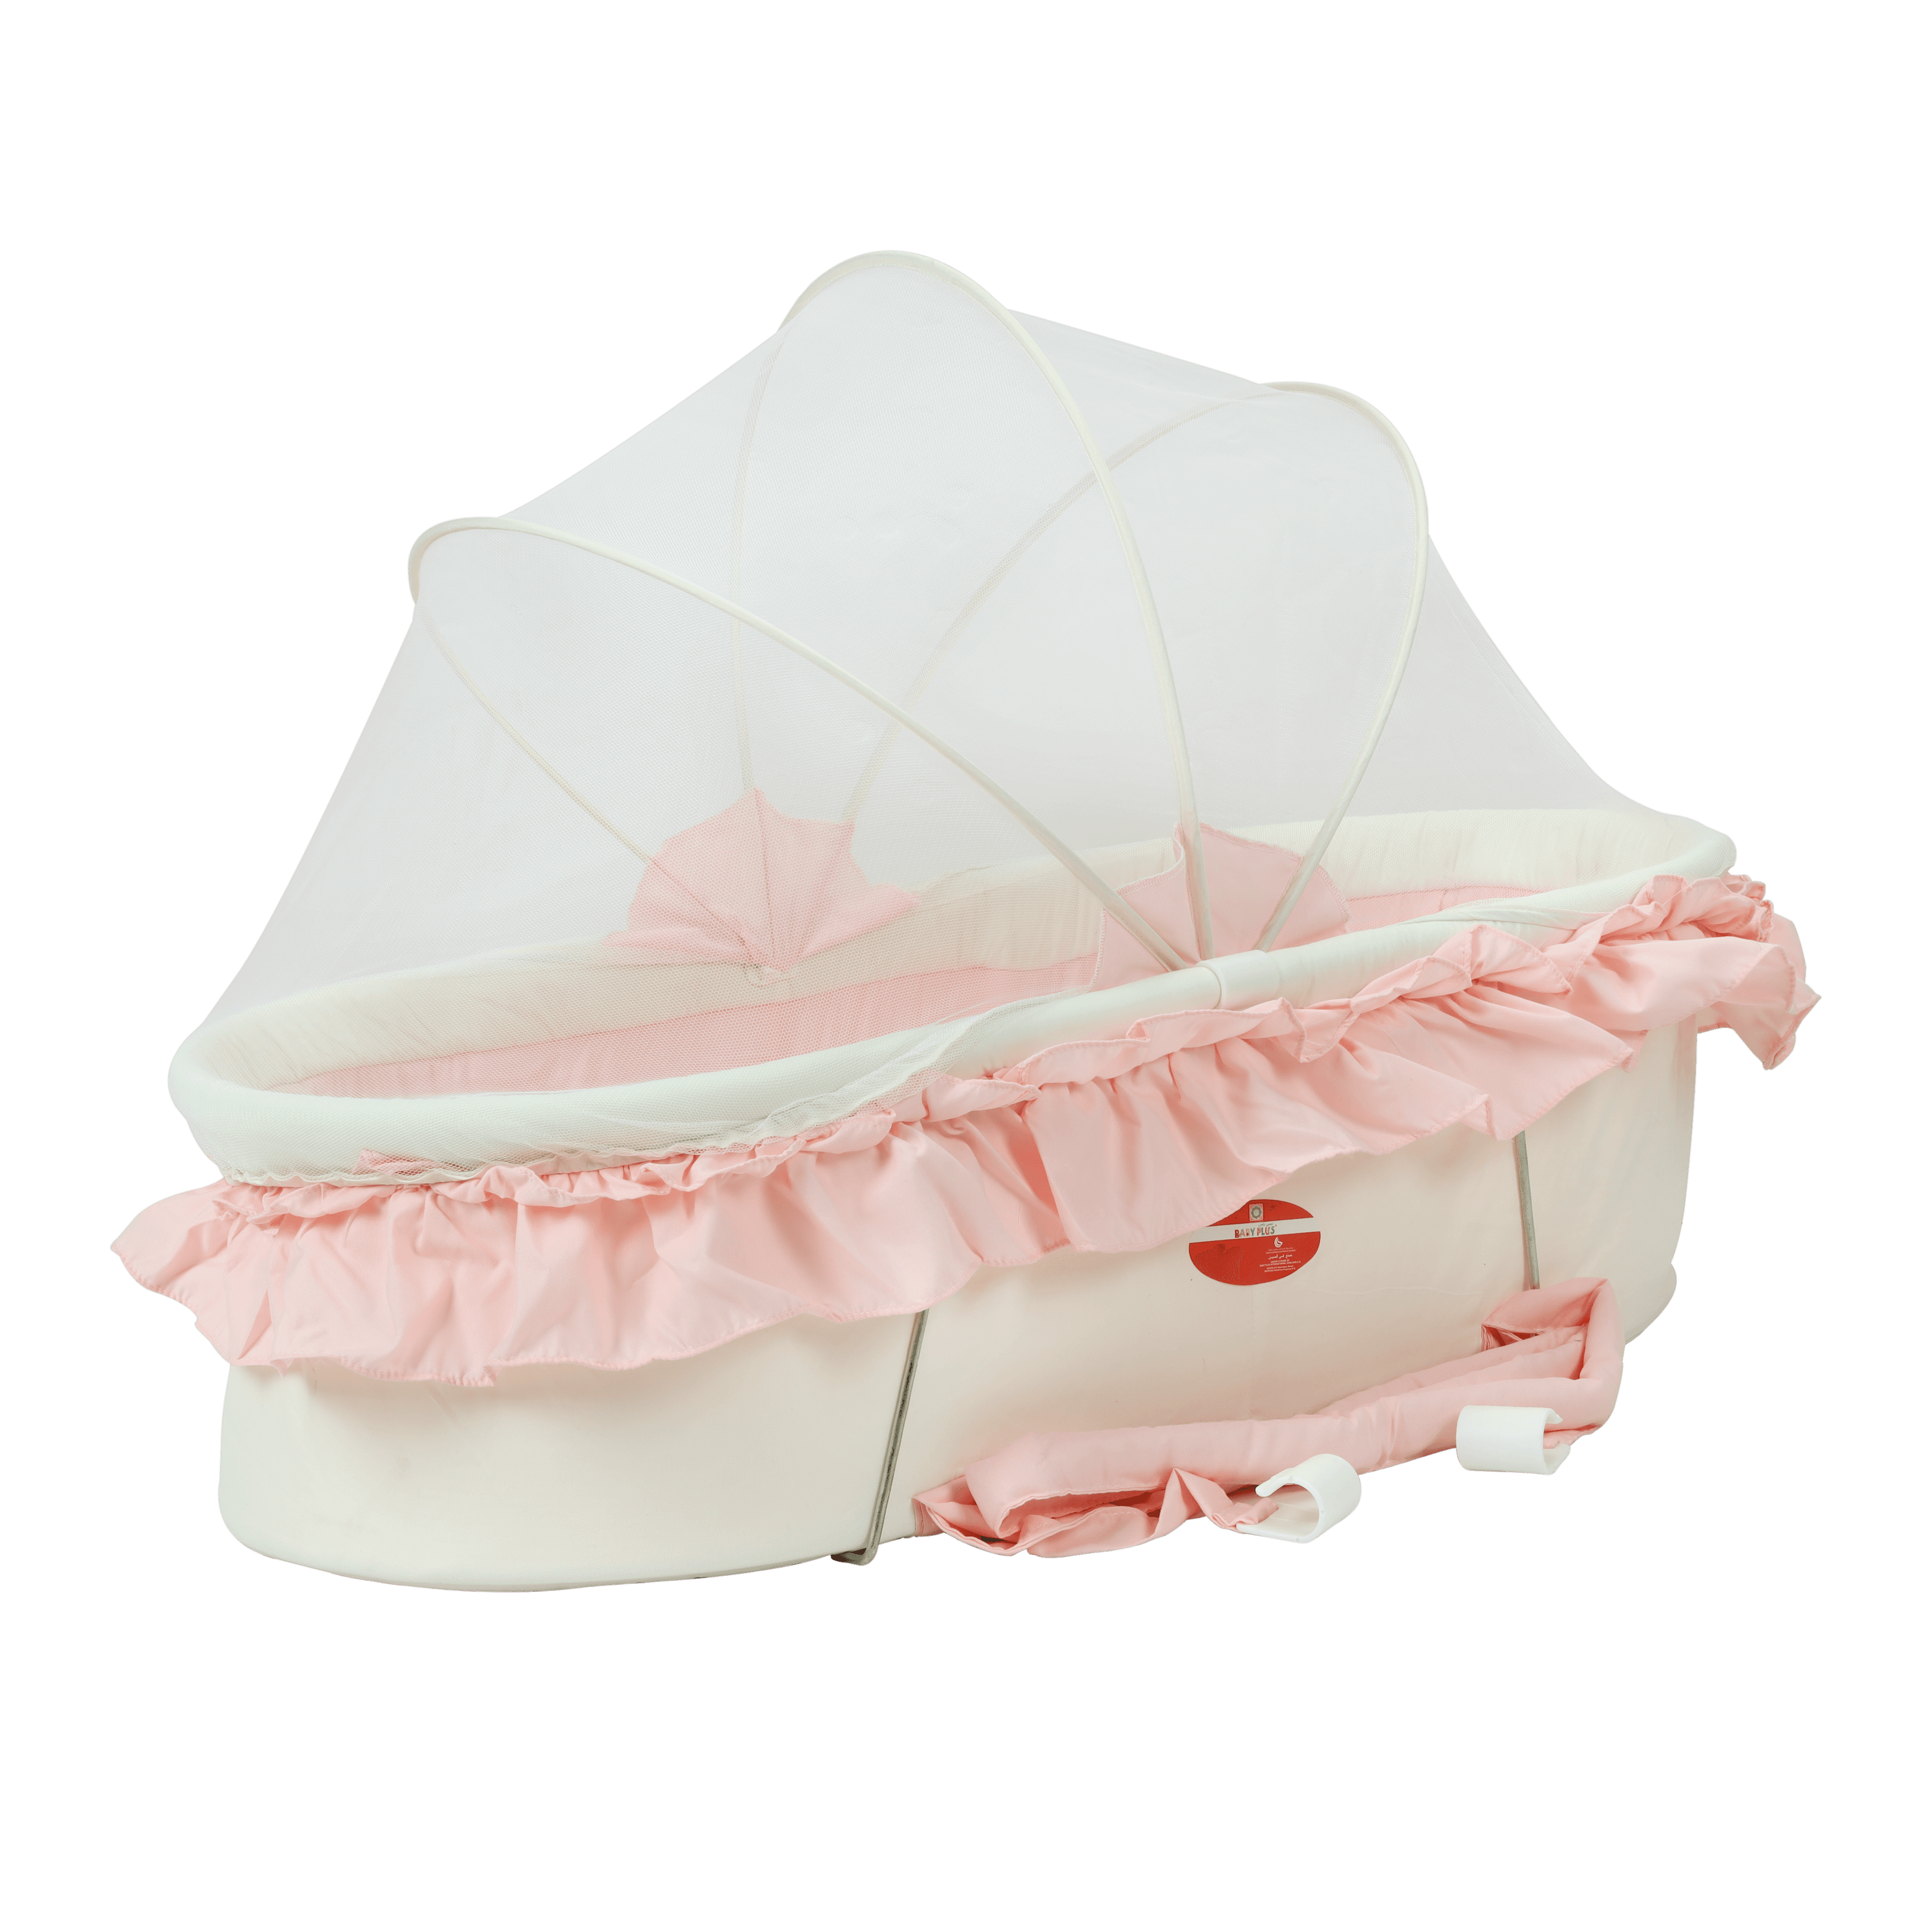 سرير أطفال محمول مع ناموسية - وردي Baby Plus Portable Folding Baby Cribbaby Bed Bag